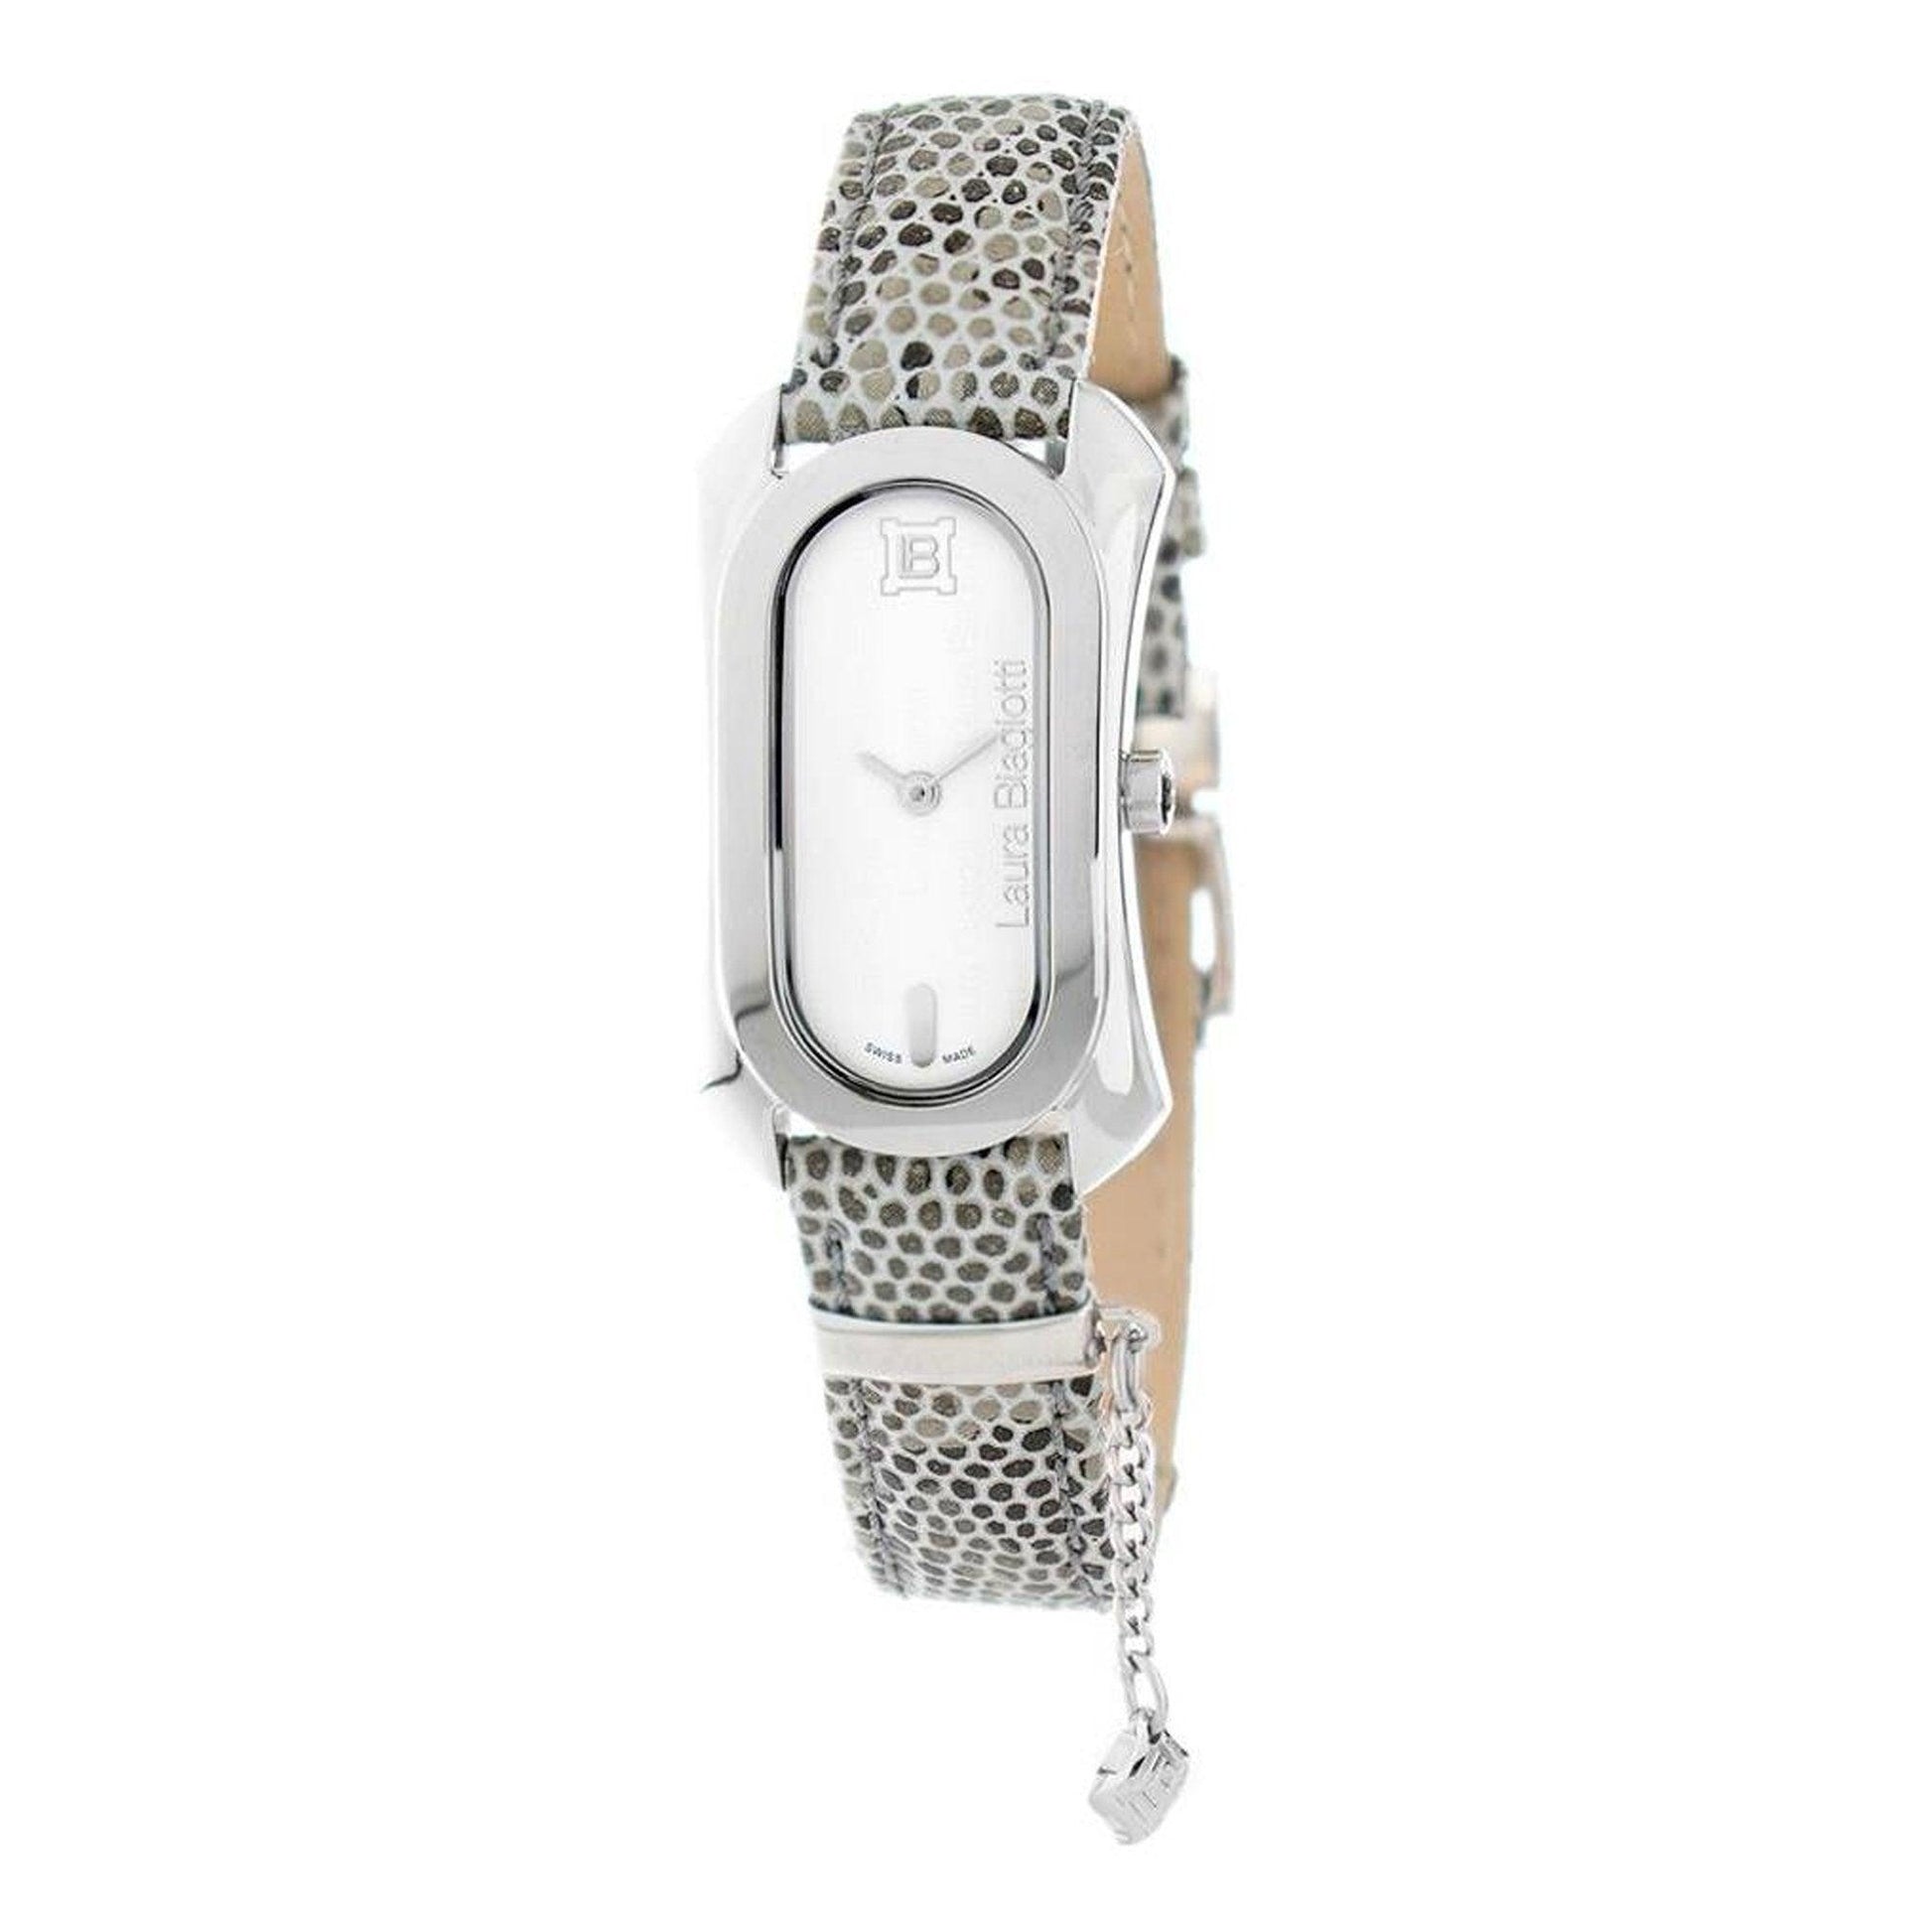 Laura Biagiotti LB0028-SE orologio donna al quarzo - Kechiq Concept Boutique